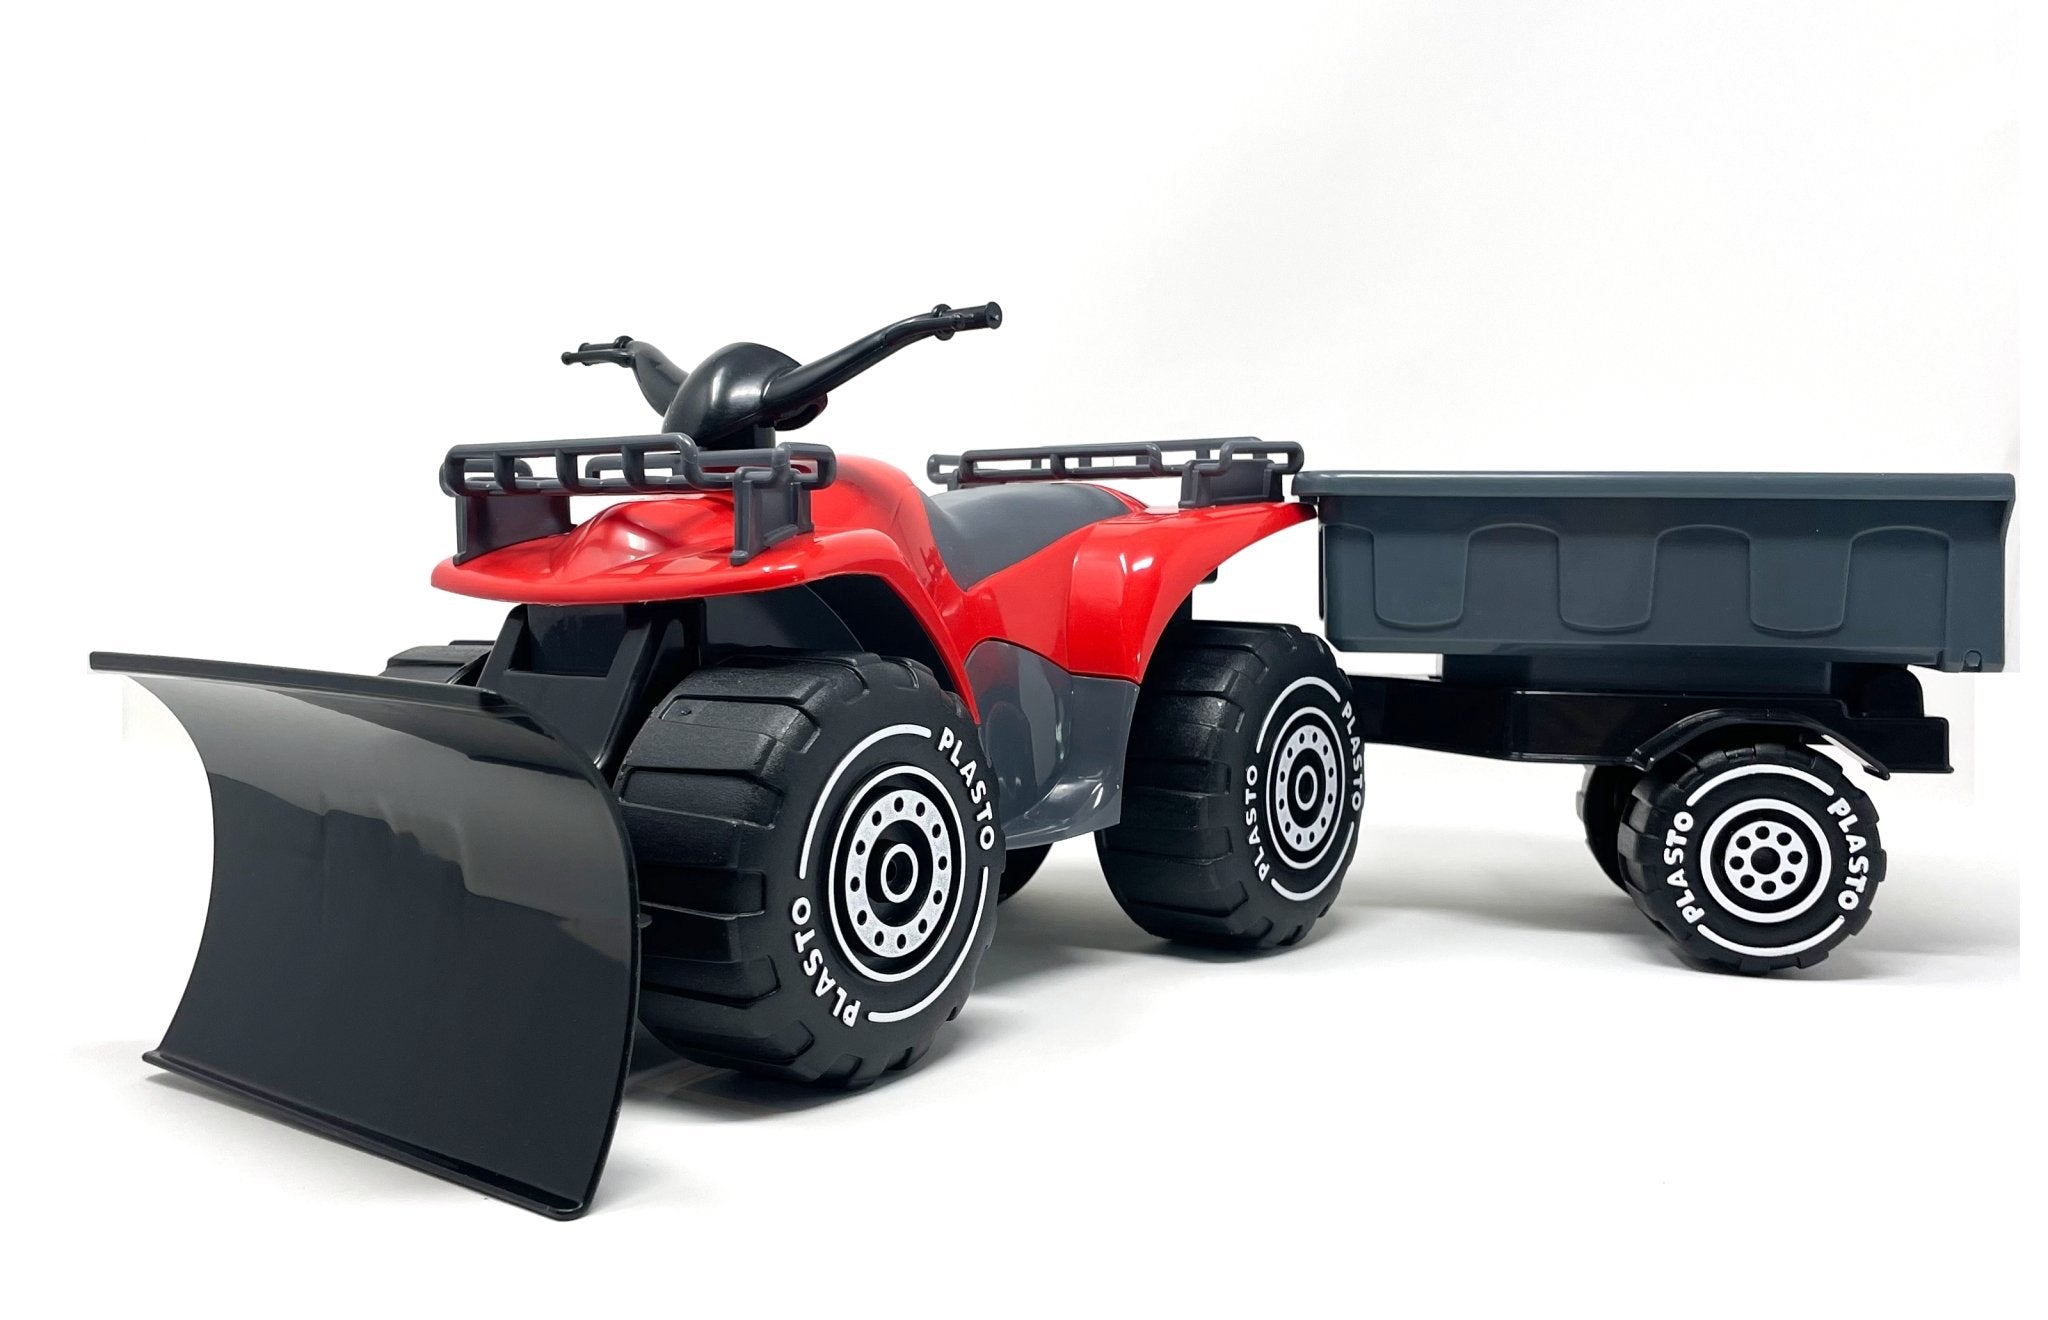 Quadbike with trailer, 52cm, Red - Koko-Kamel.com